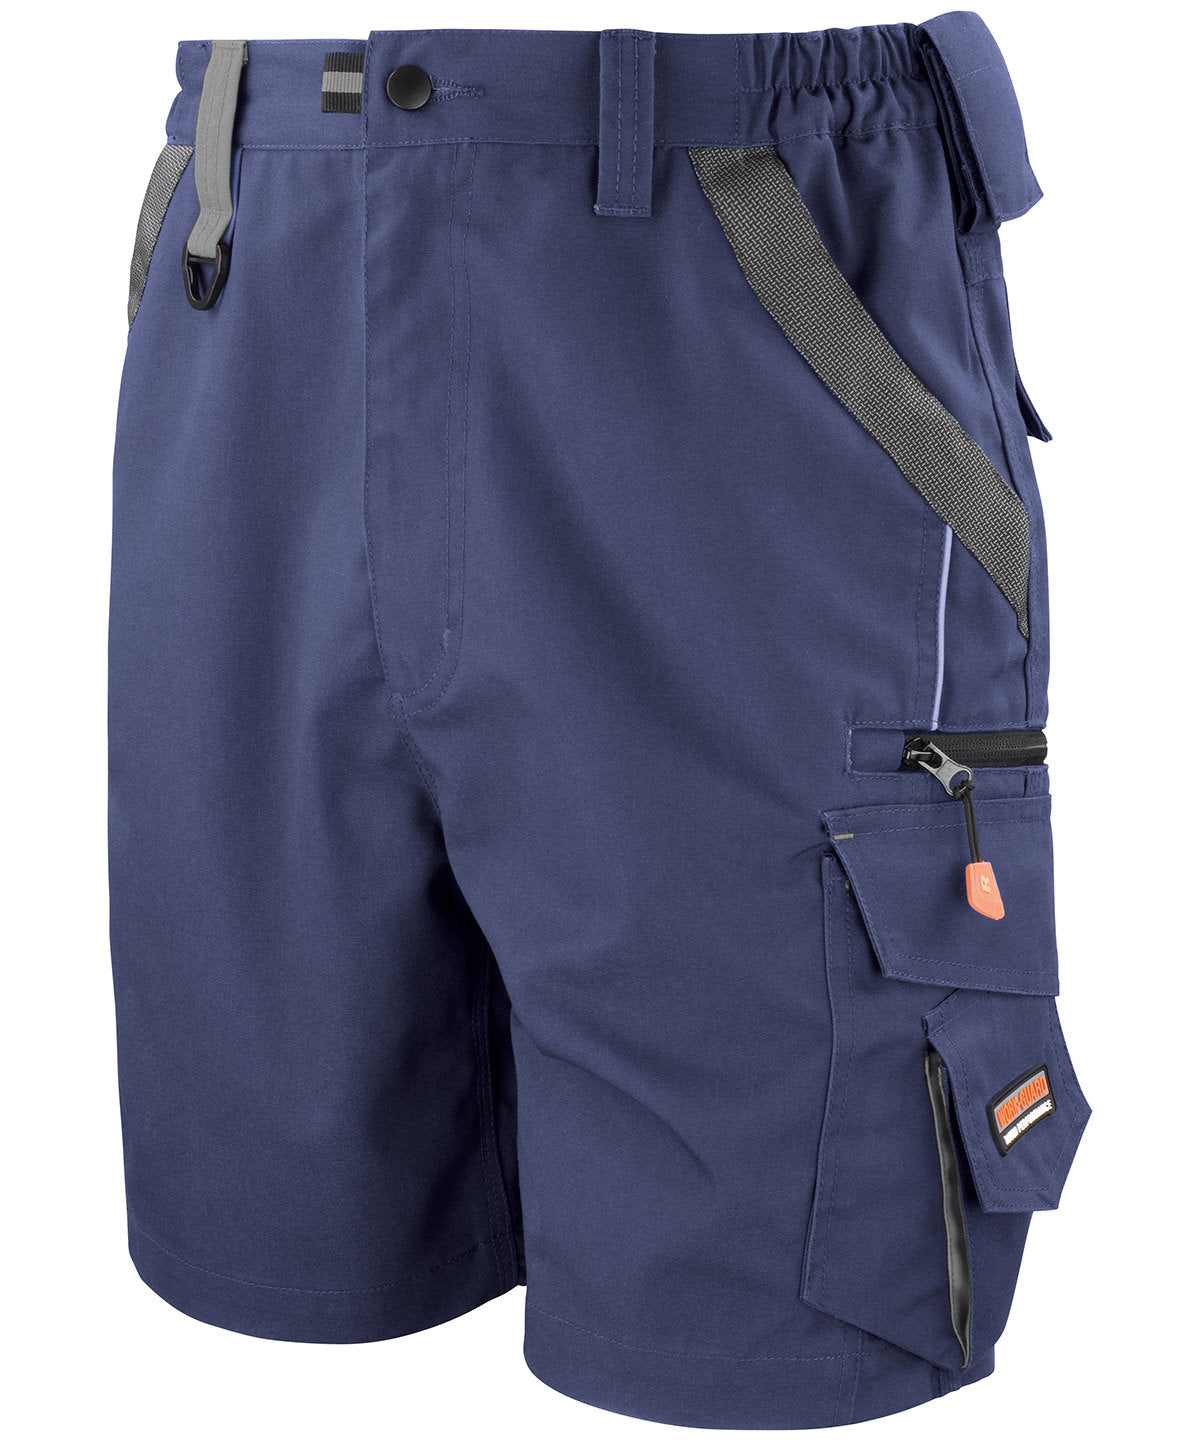 Stuttbuxur - Work-Guard Technical Shorts